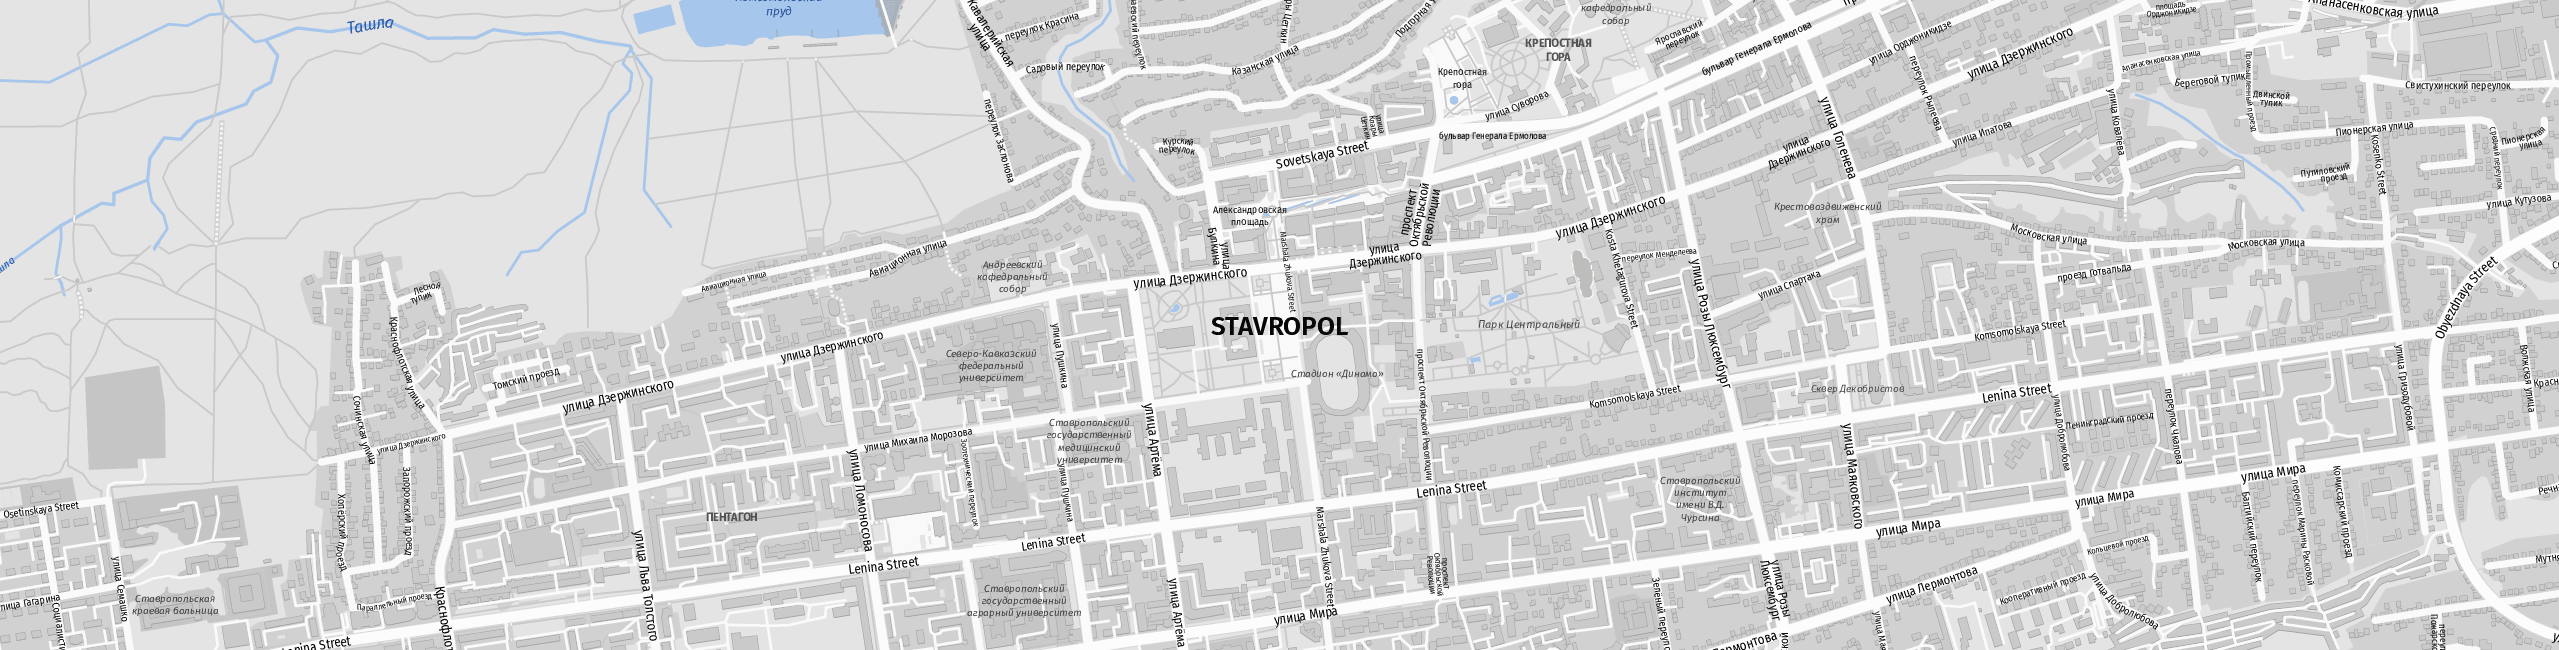 Stadtplan Stavropol zum Downloaden.